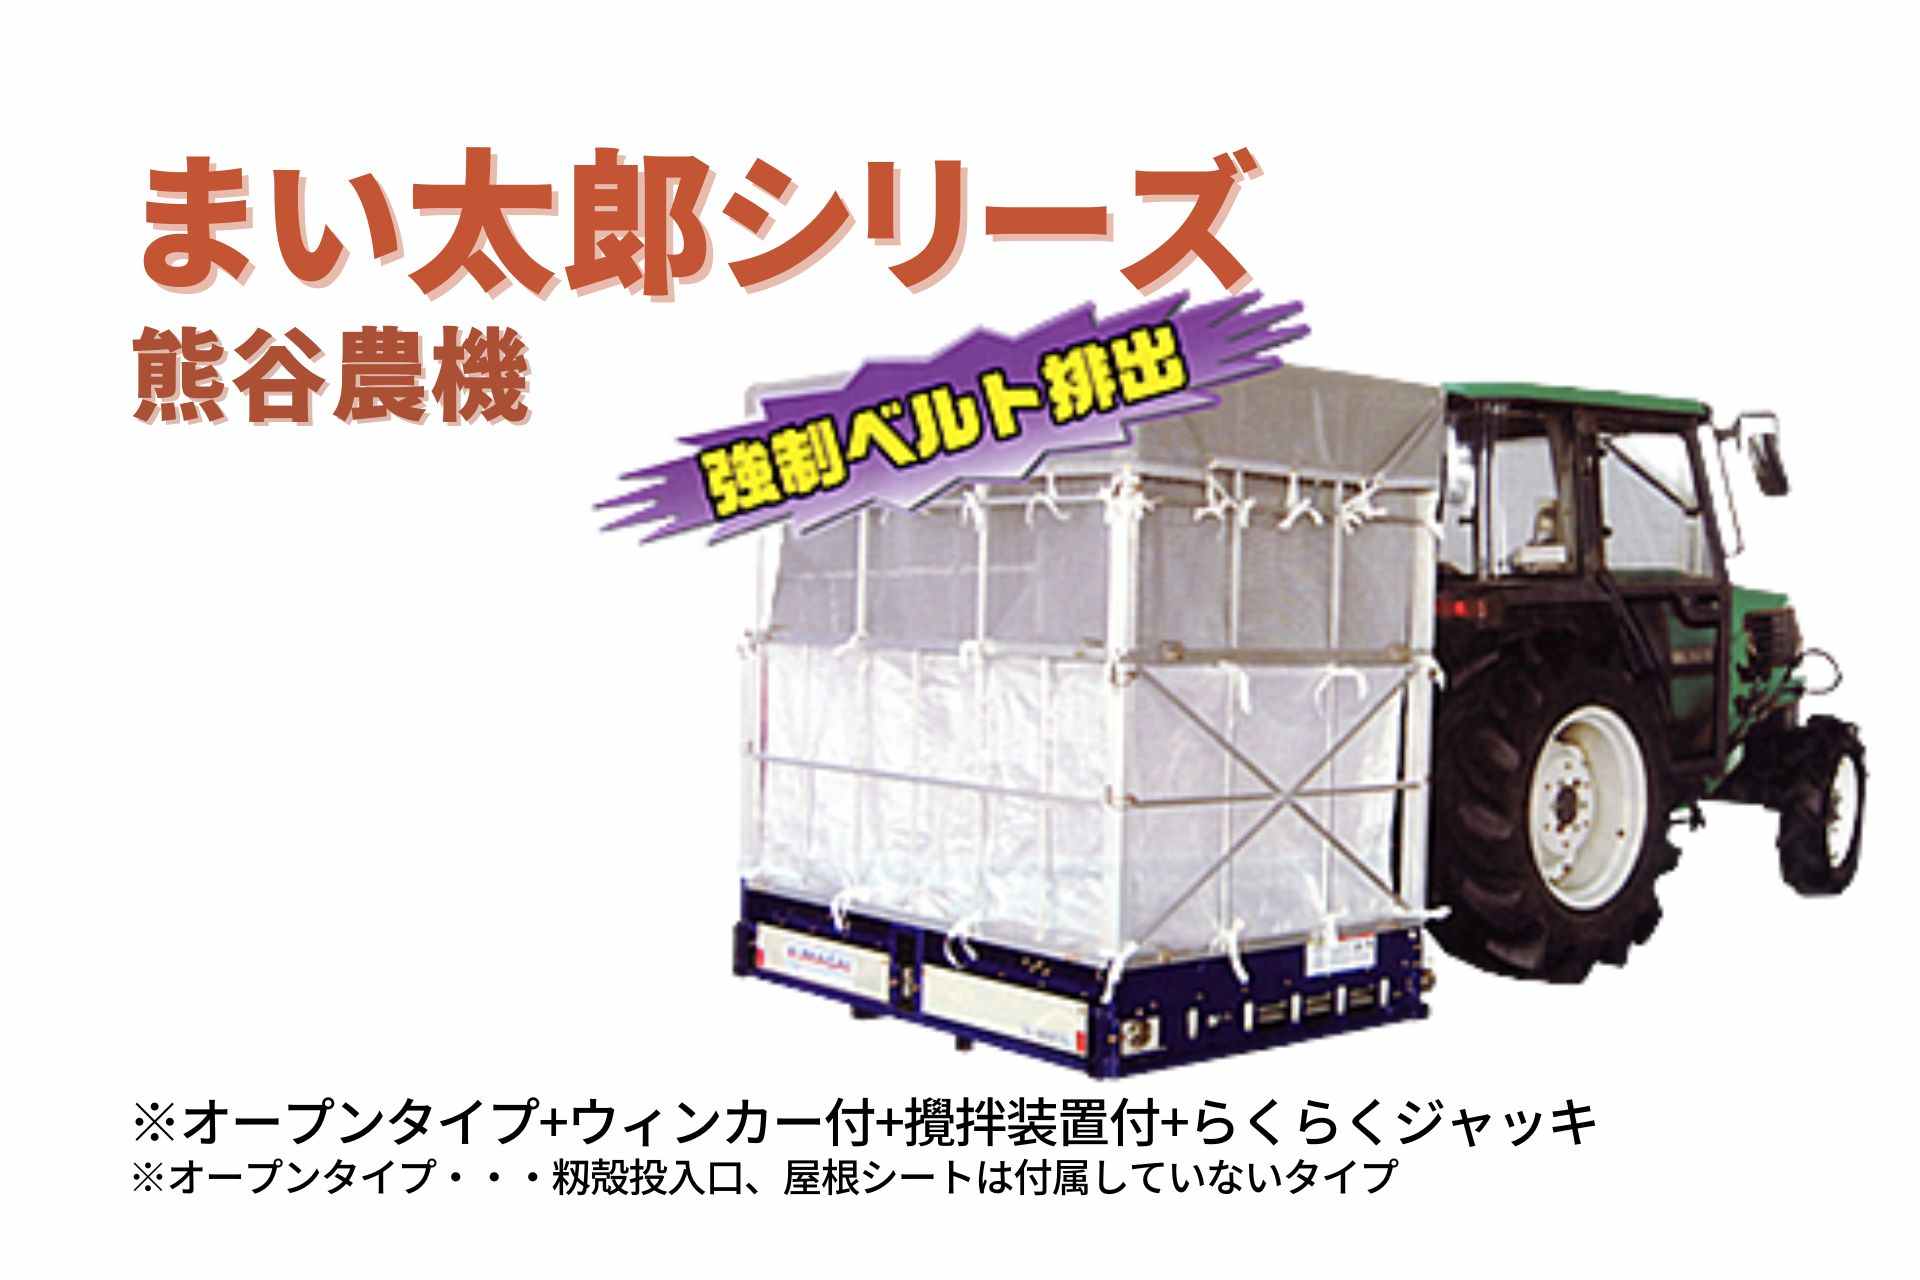 籾殻散布機 まい太郎 オープンタイプ ウィンカー付 攪拌装置付 らくらくジャッキ MTA-40RJOW 熊谷農機